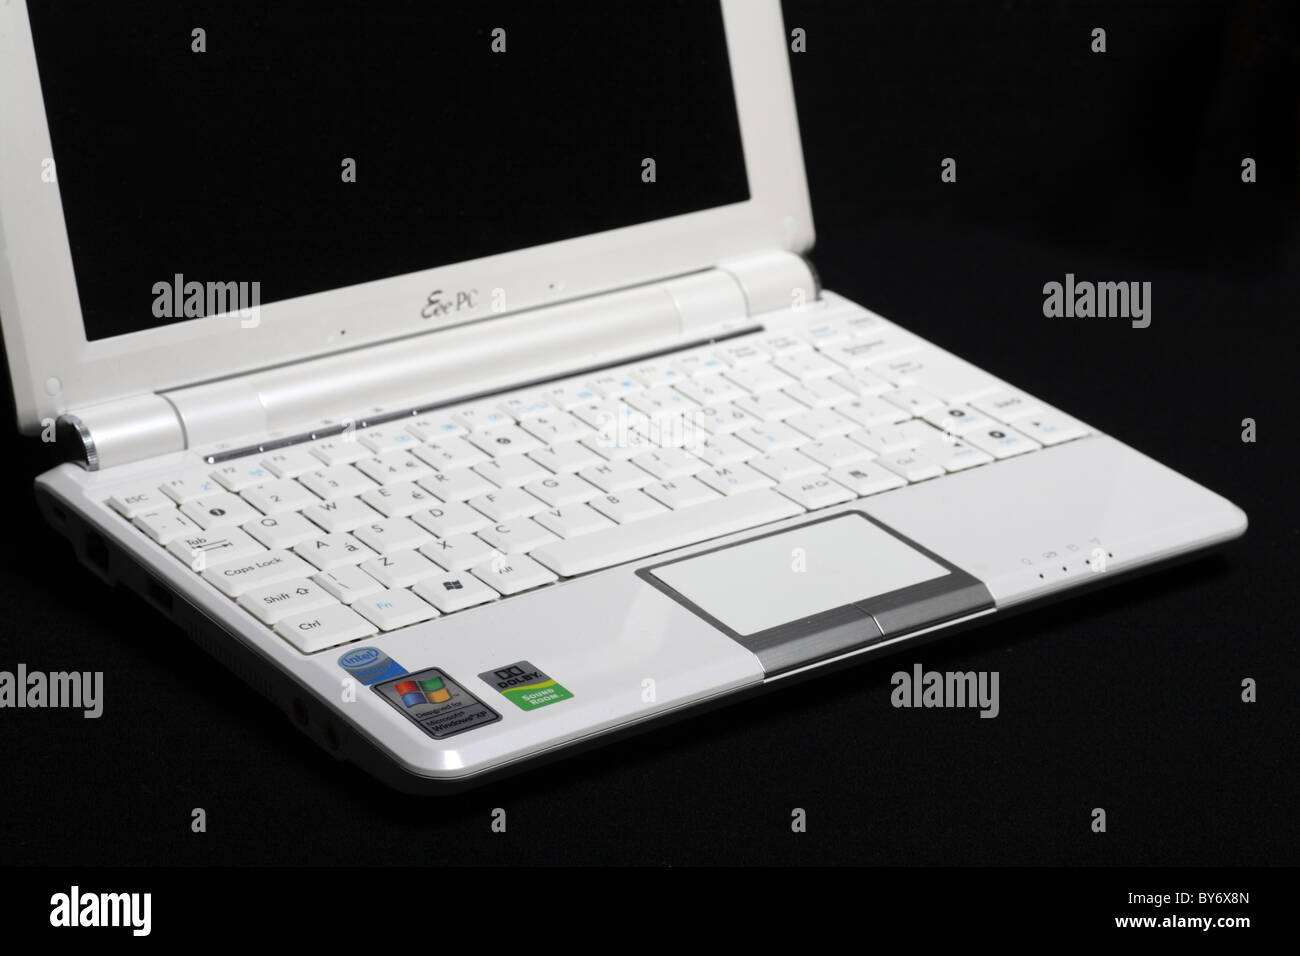 Asus Eeepc blanc écran 10 pouces netbook ordinateur portable windows mini PC  isolé sur black Photo Stock - Alamy